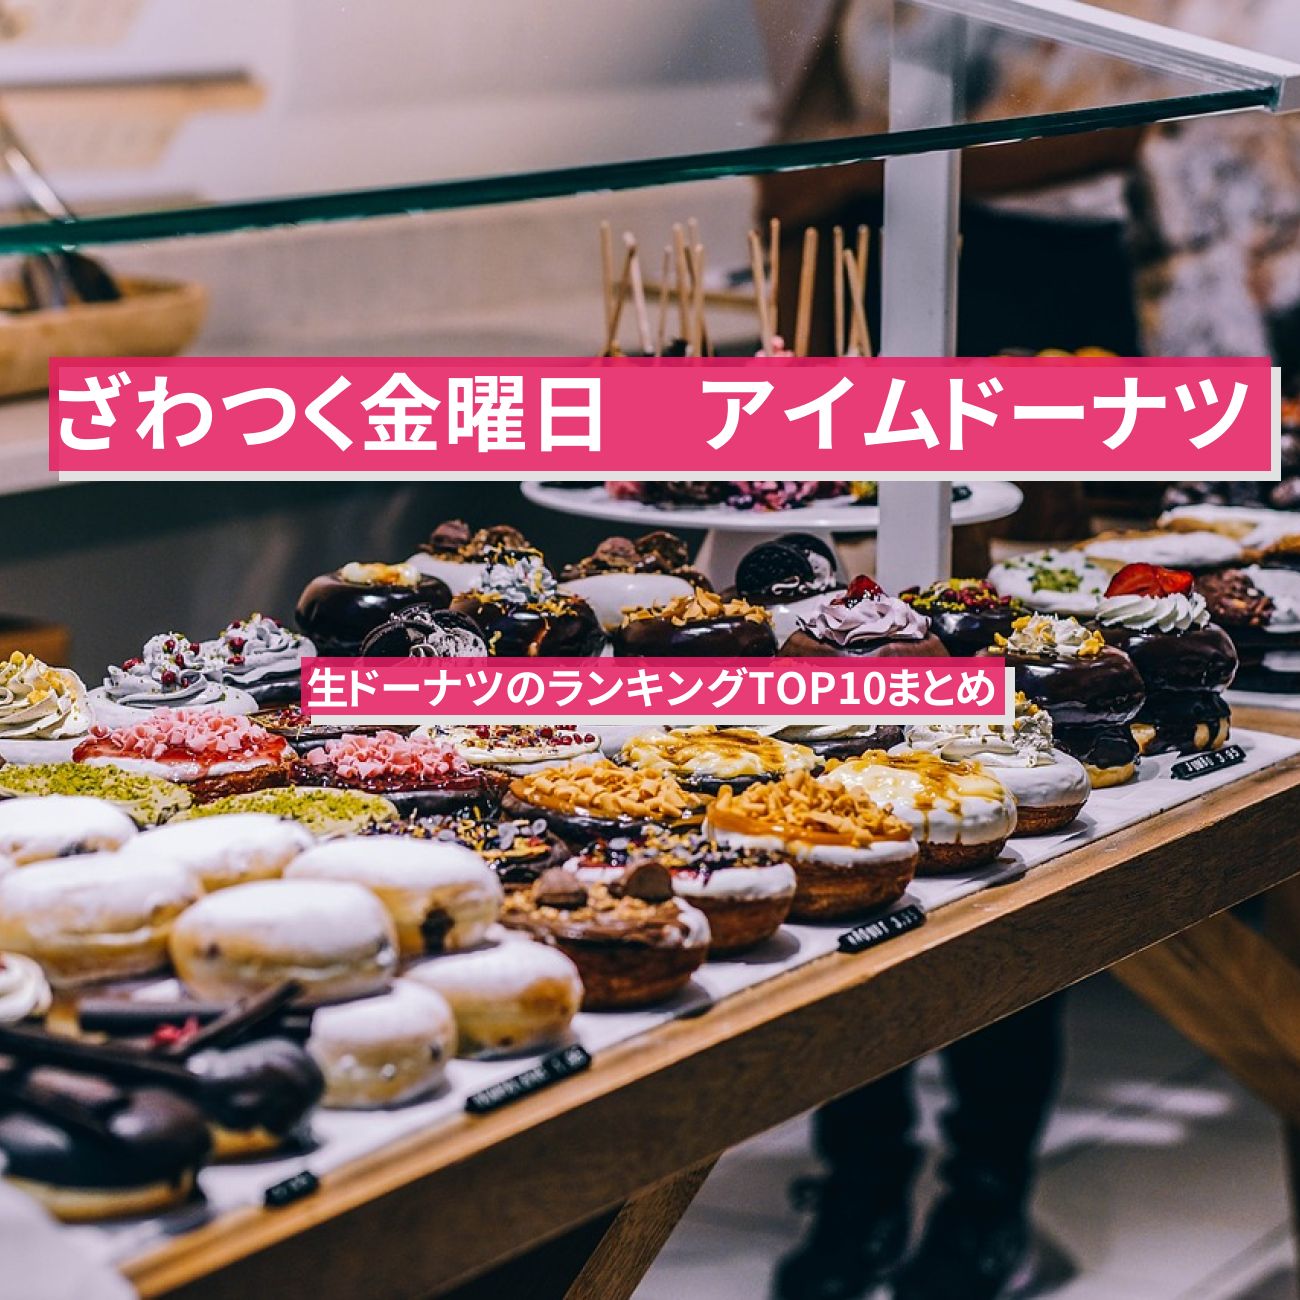 【ざわつく金曜日】アイムドーナツ(Im donut?)のランキングTOP10まとめ〔生ドーナツ〕